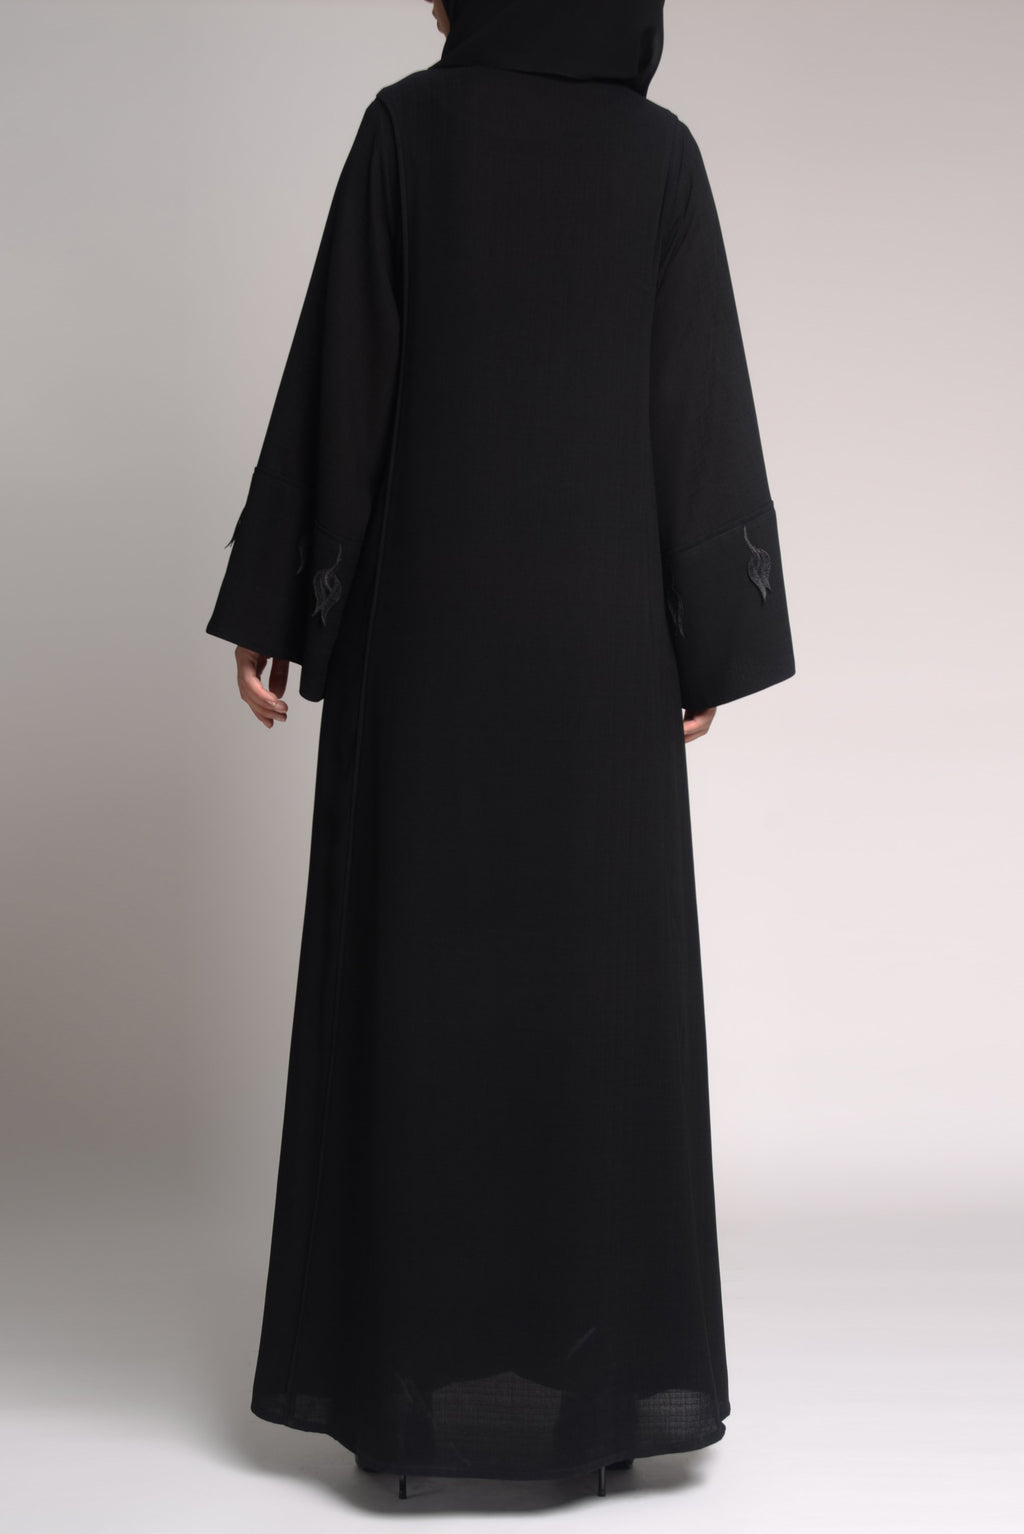 luxury branded black abayas - thowby - designer dubai abayas